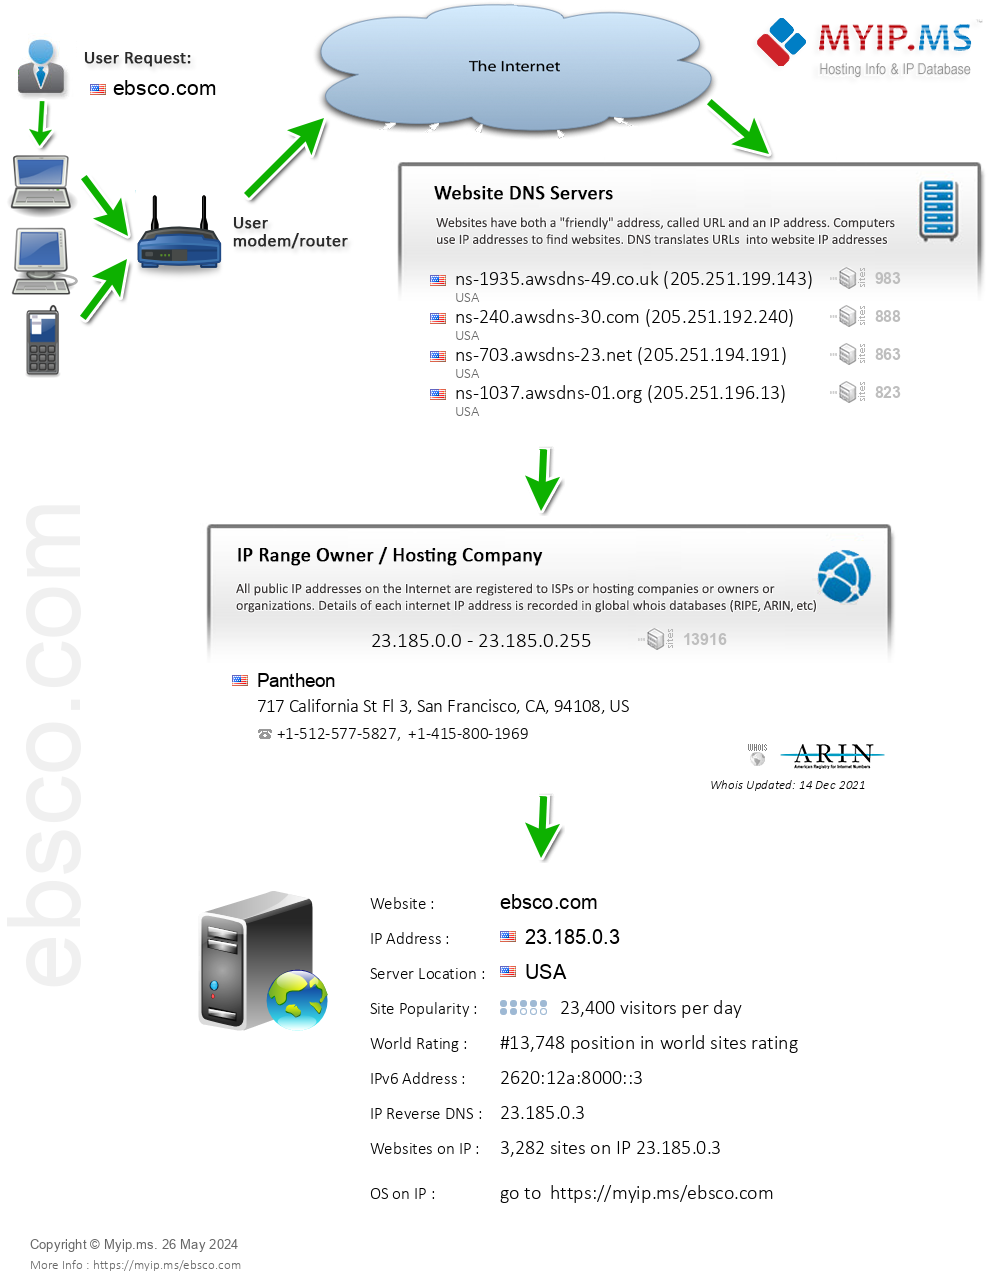 Ebsco.com - Website Hosting Visual IP Diagram